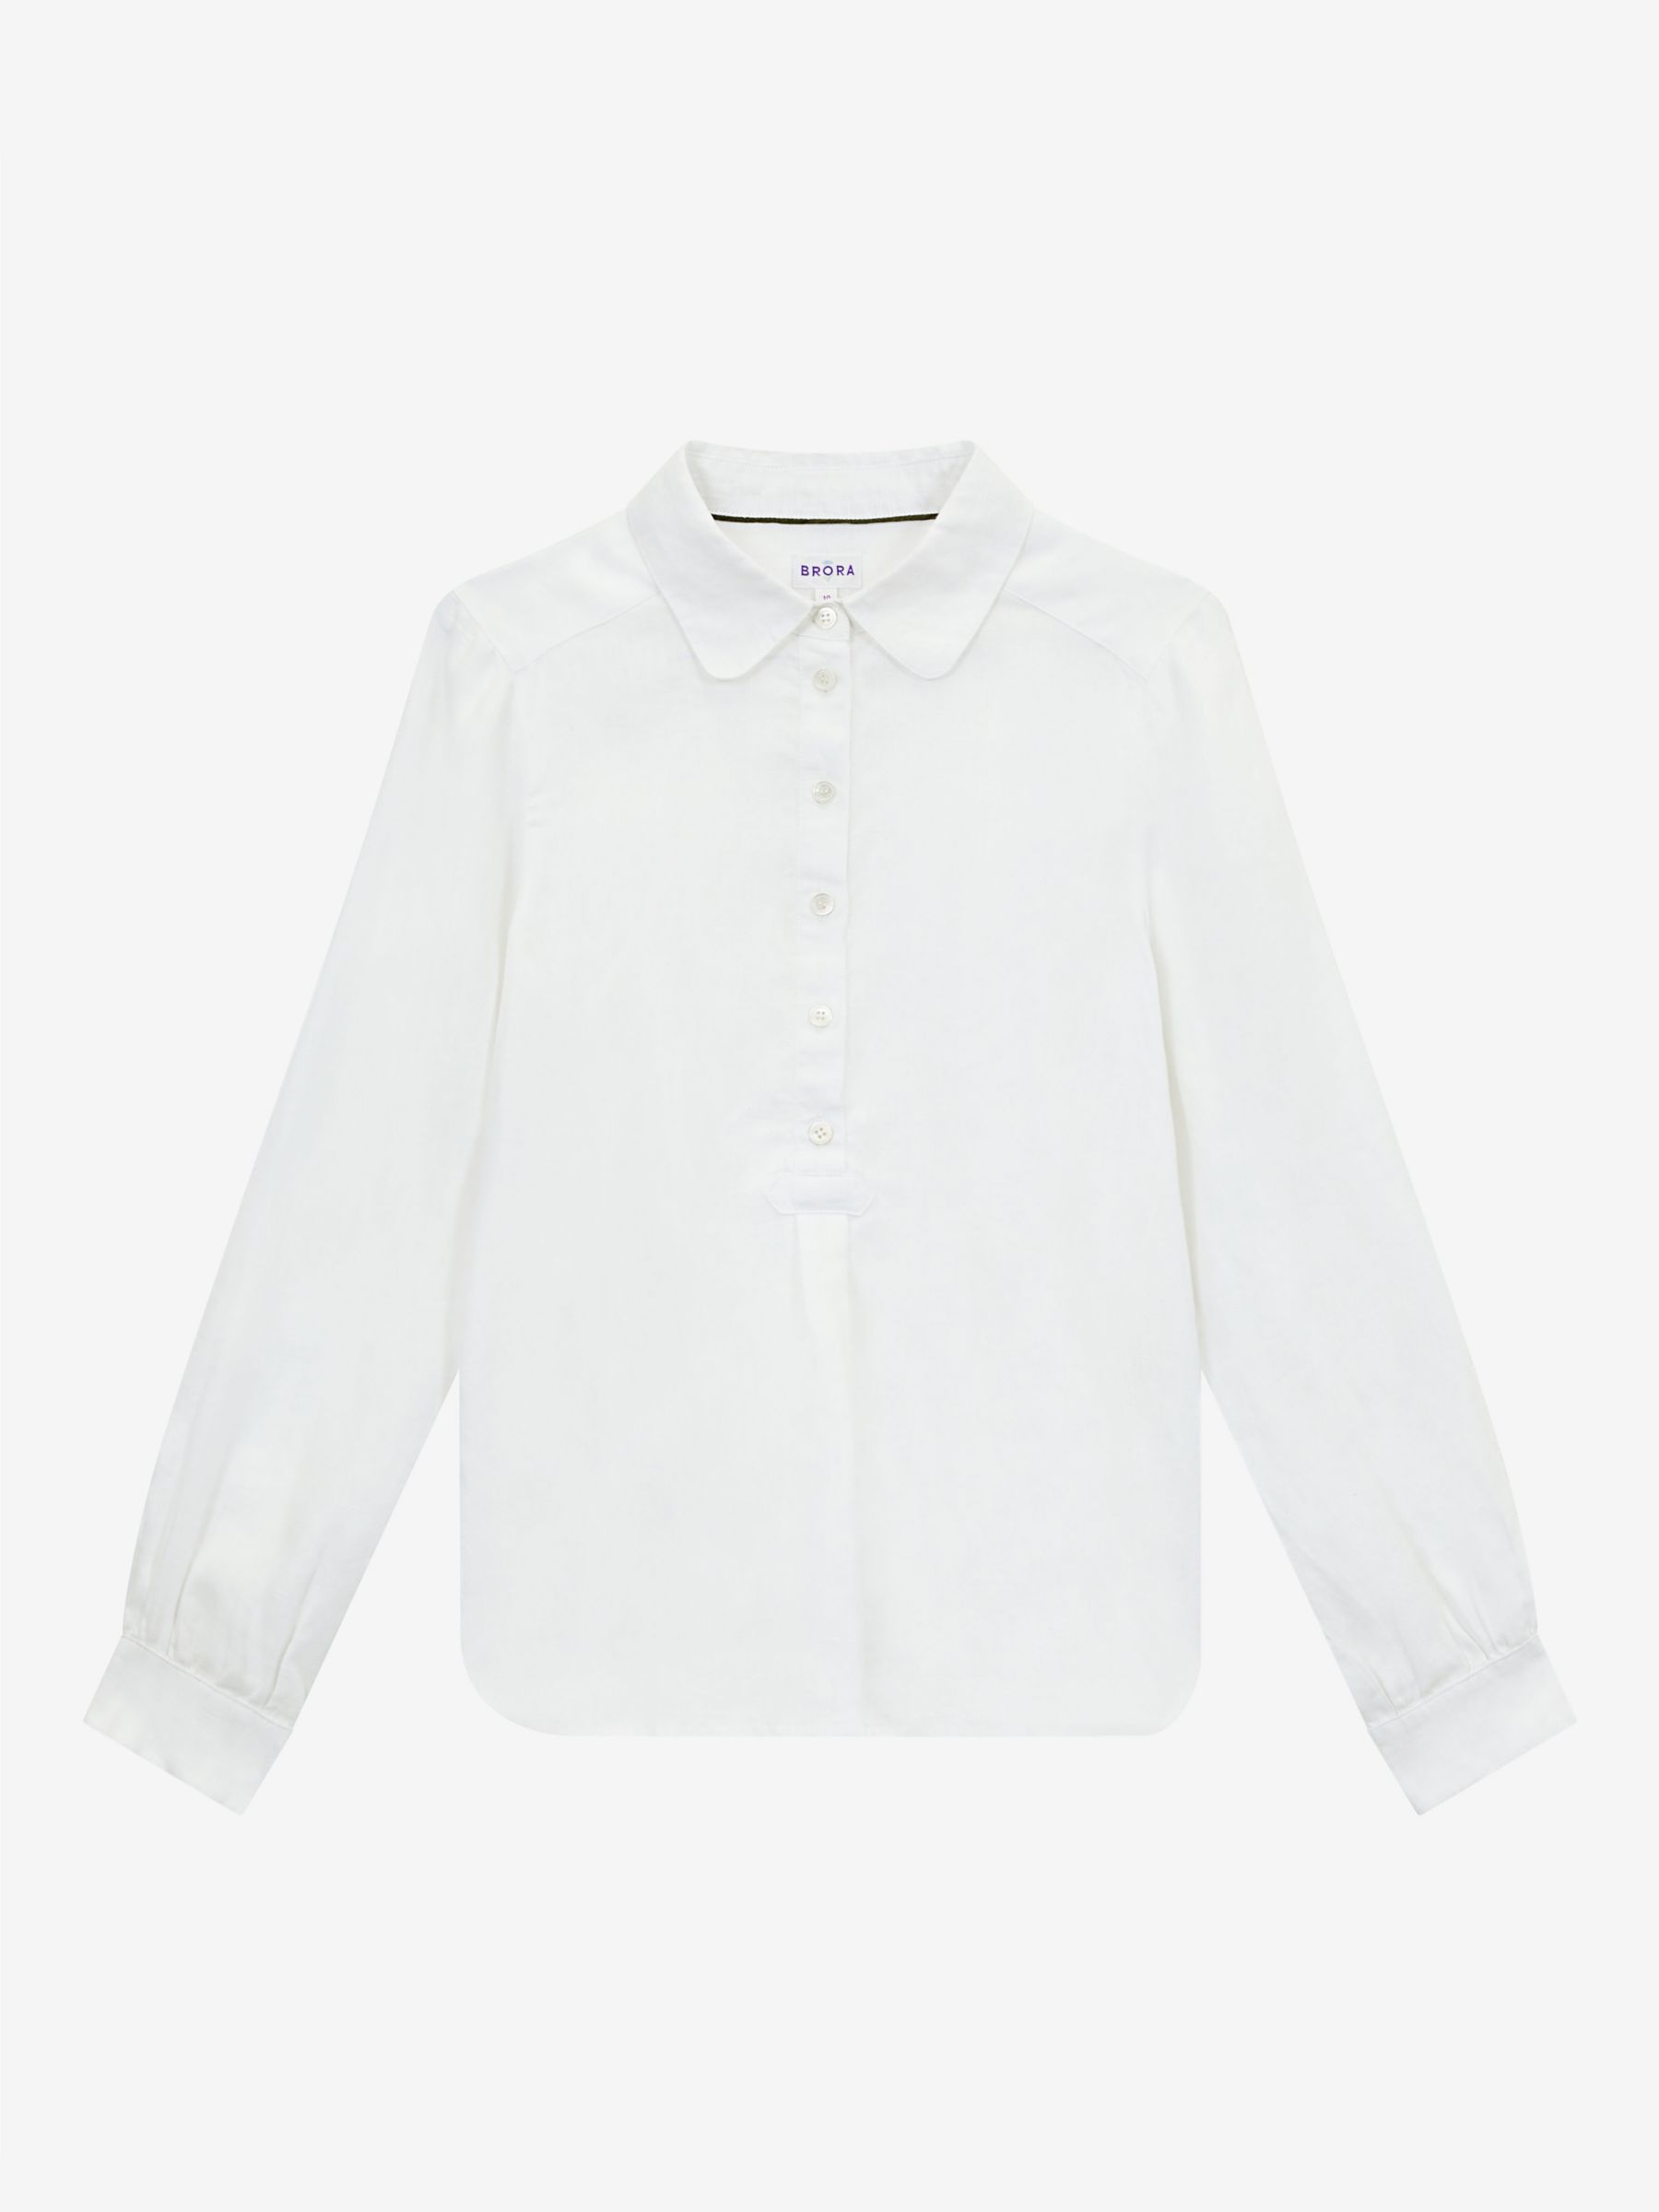 Brora Linen Tunic Shirt, White, 6